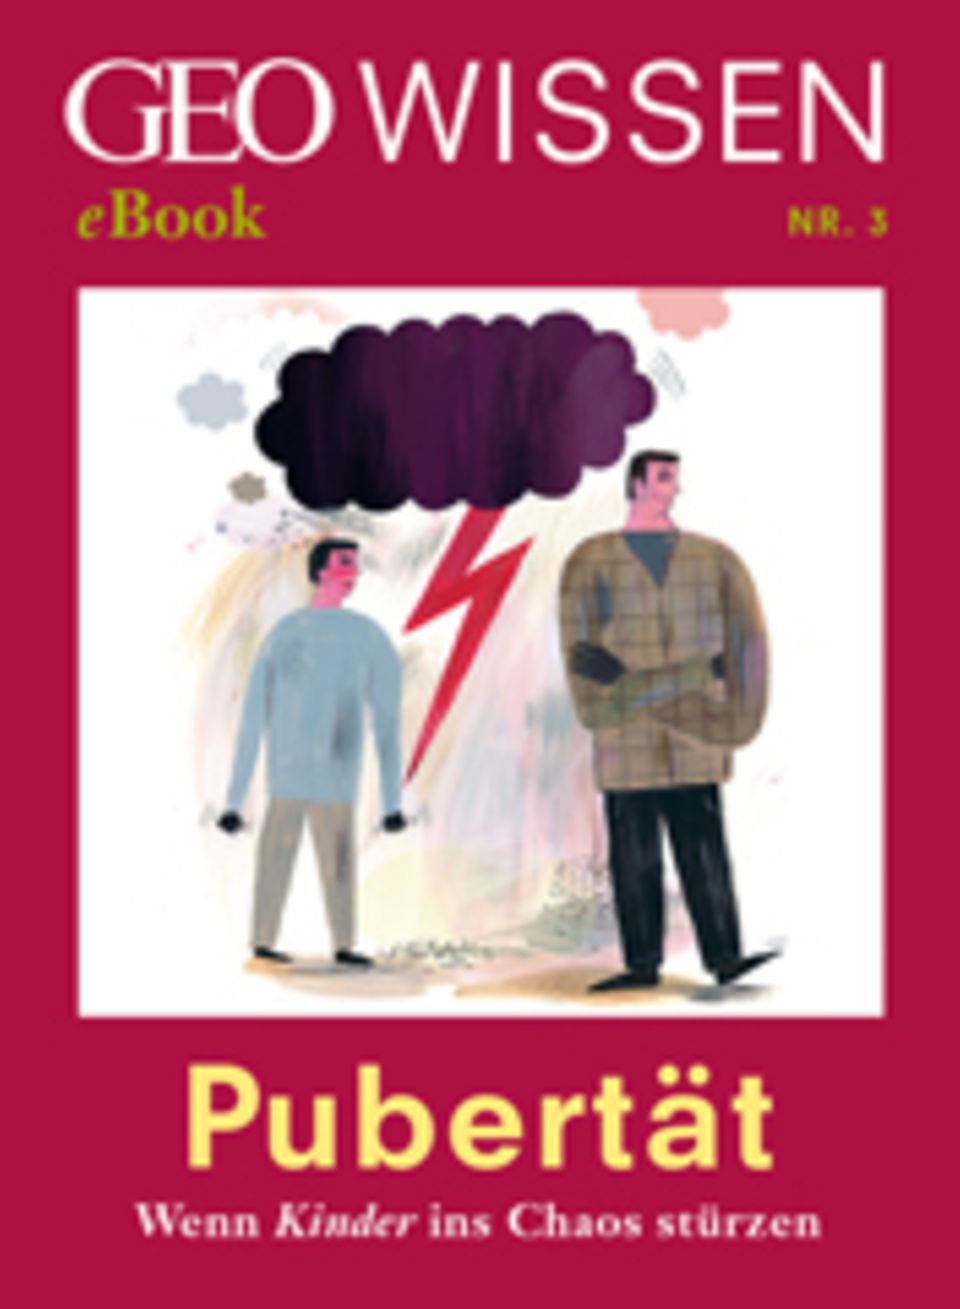 Pubertät: Wenn Kinder ins Chaos stürzen: GEO WISSEN eBook "Pubertät"